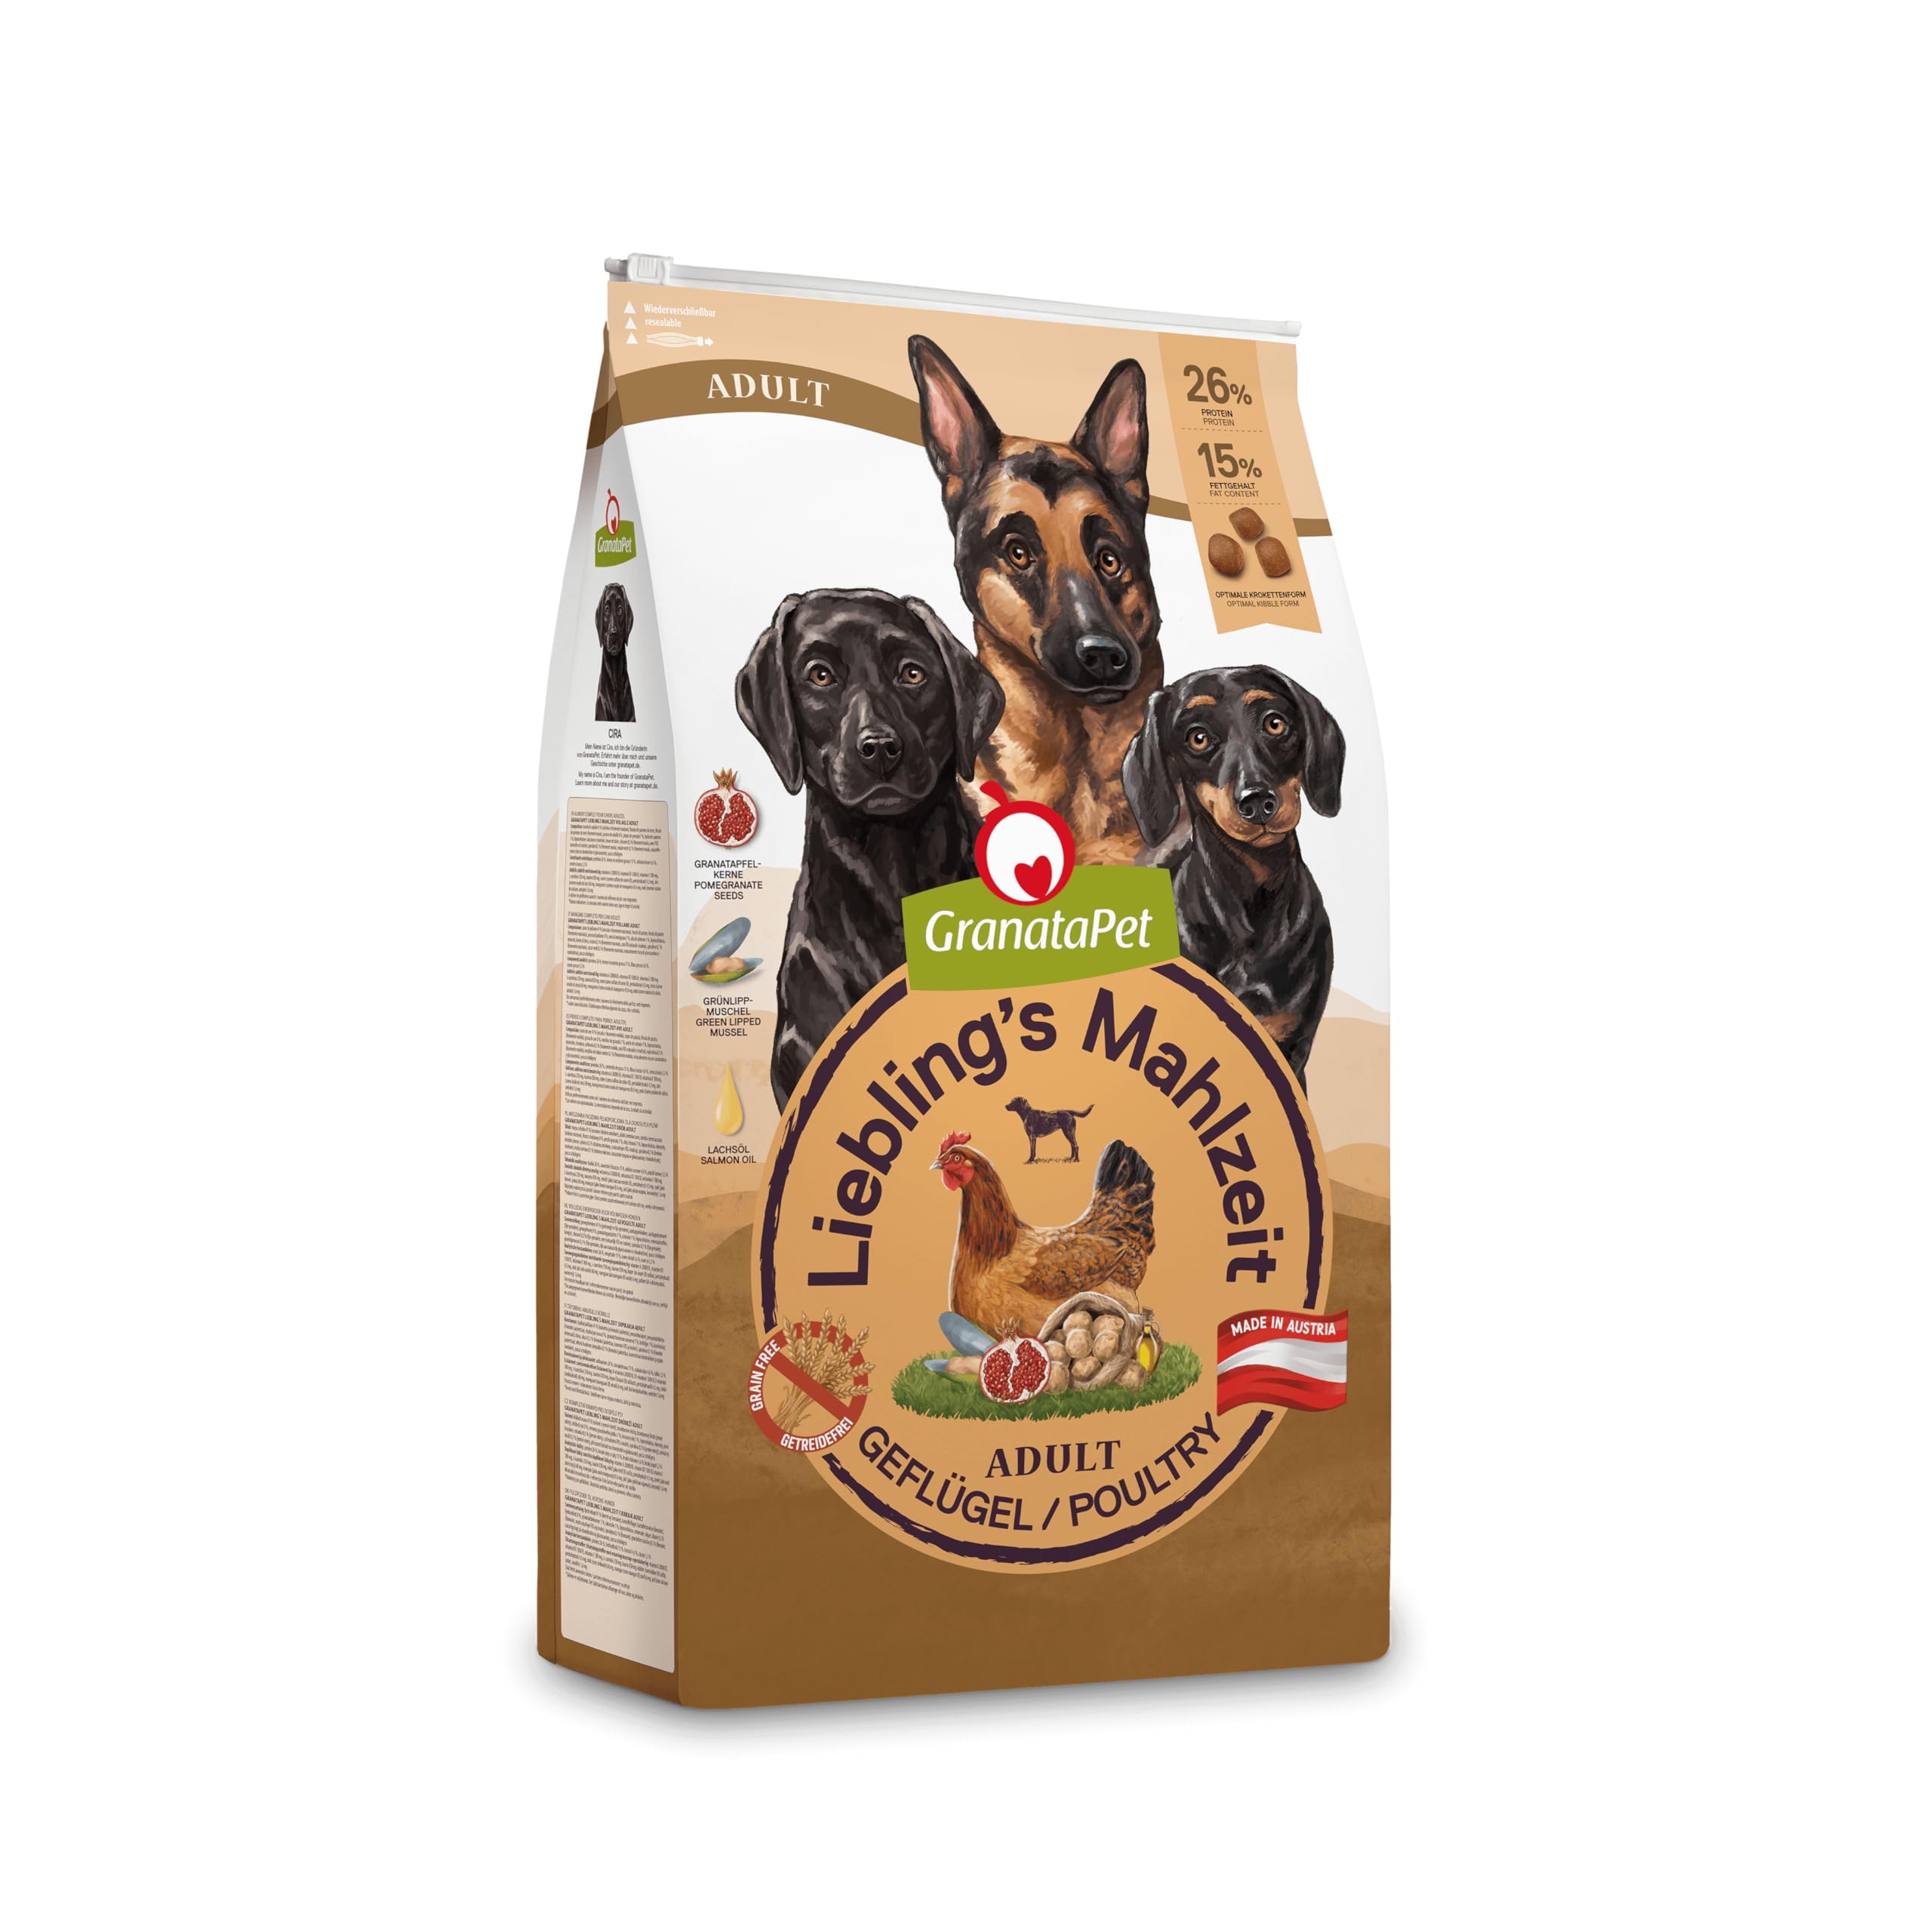 GranataPet Liebling's Mahlzeit Adult Geflügel, 10 kg, Trockenfutter für Hunde, Hundefutter ohne Getreide & ohne Zuckerzusätze, Alleinfuttermittel